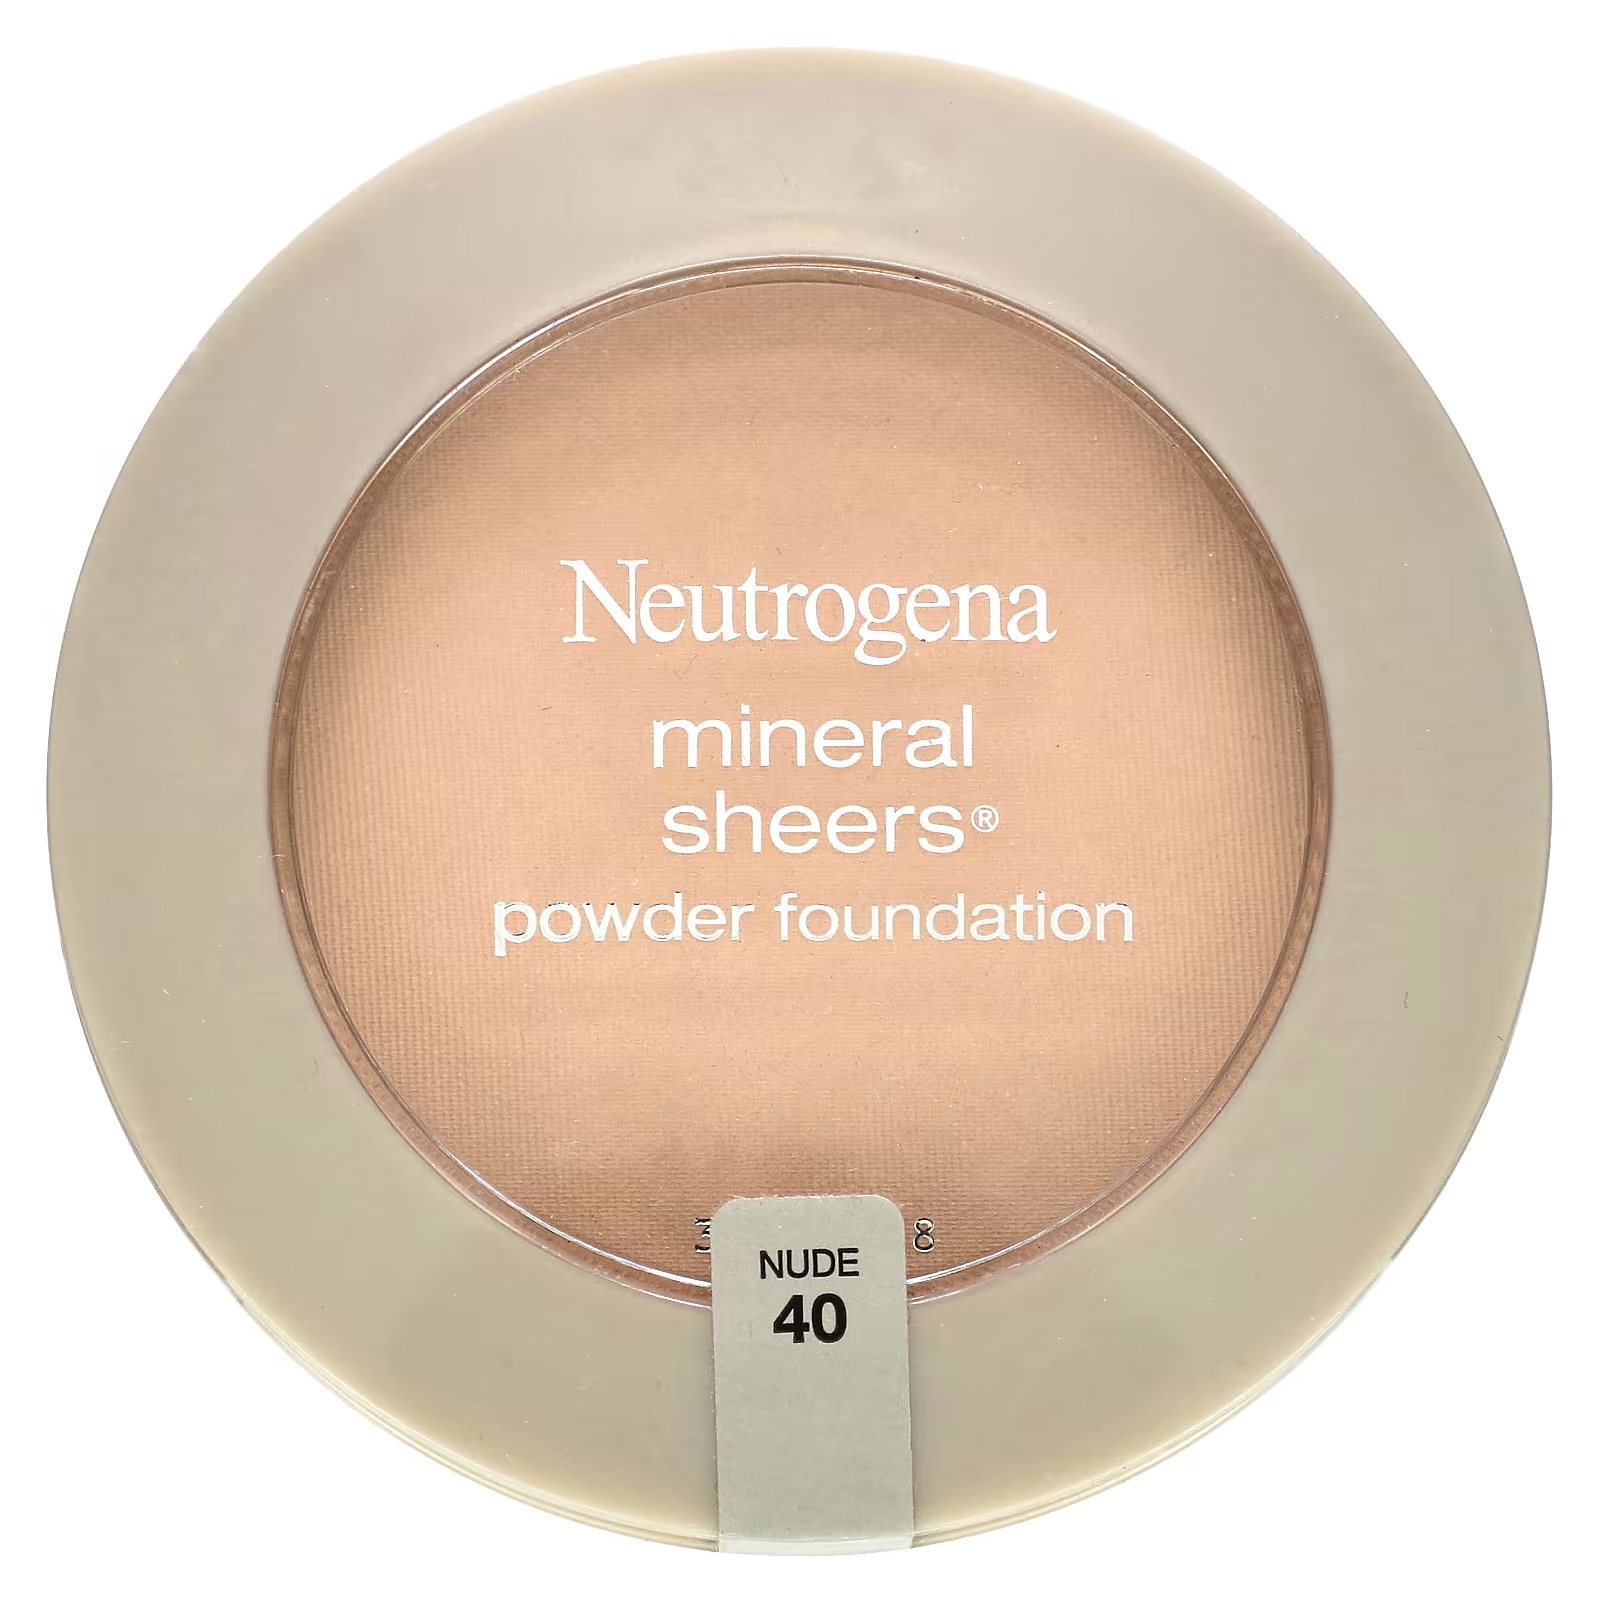 Neutrogena Mineral Sheers Пудра-пудра телесного цвета 40, 0,34 унции (9,6 г) neutrogena минеральная тональная пудра sheers оттенок nude 40 5 5 г 0 19 унции